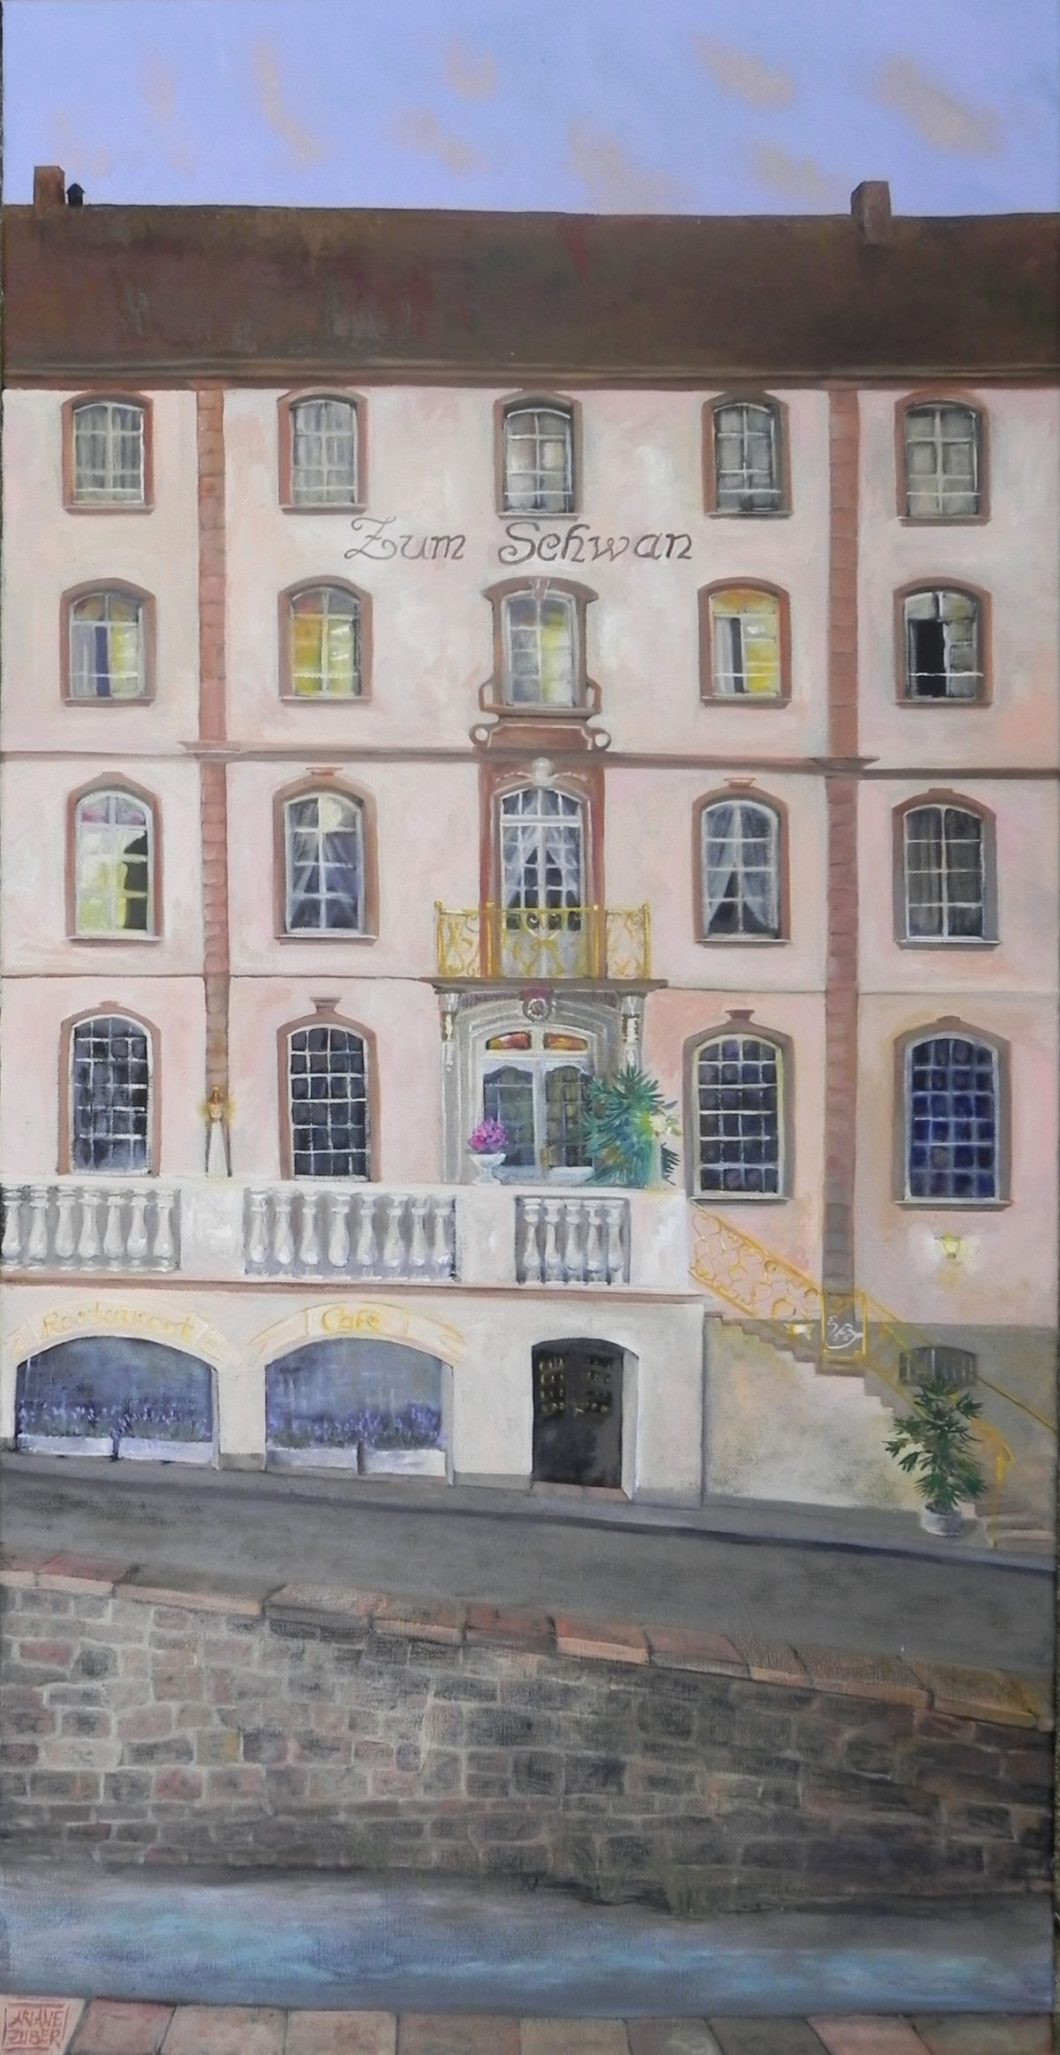 Gemälde: Hotel zum schwan, Ariane Zuber, Bad Karlshafen